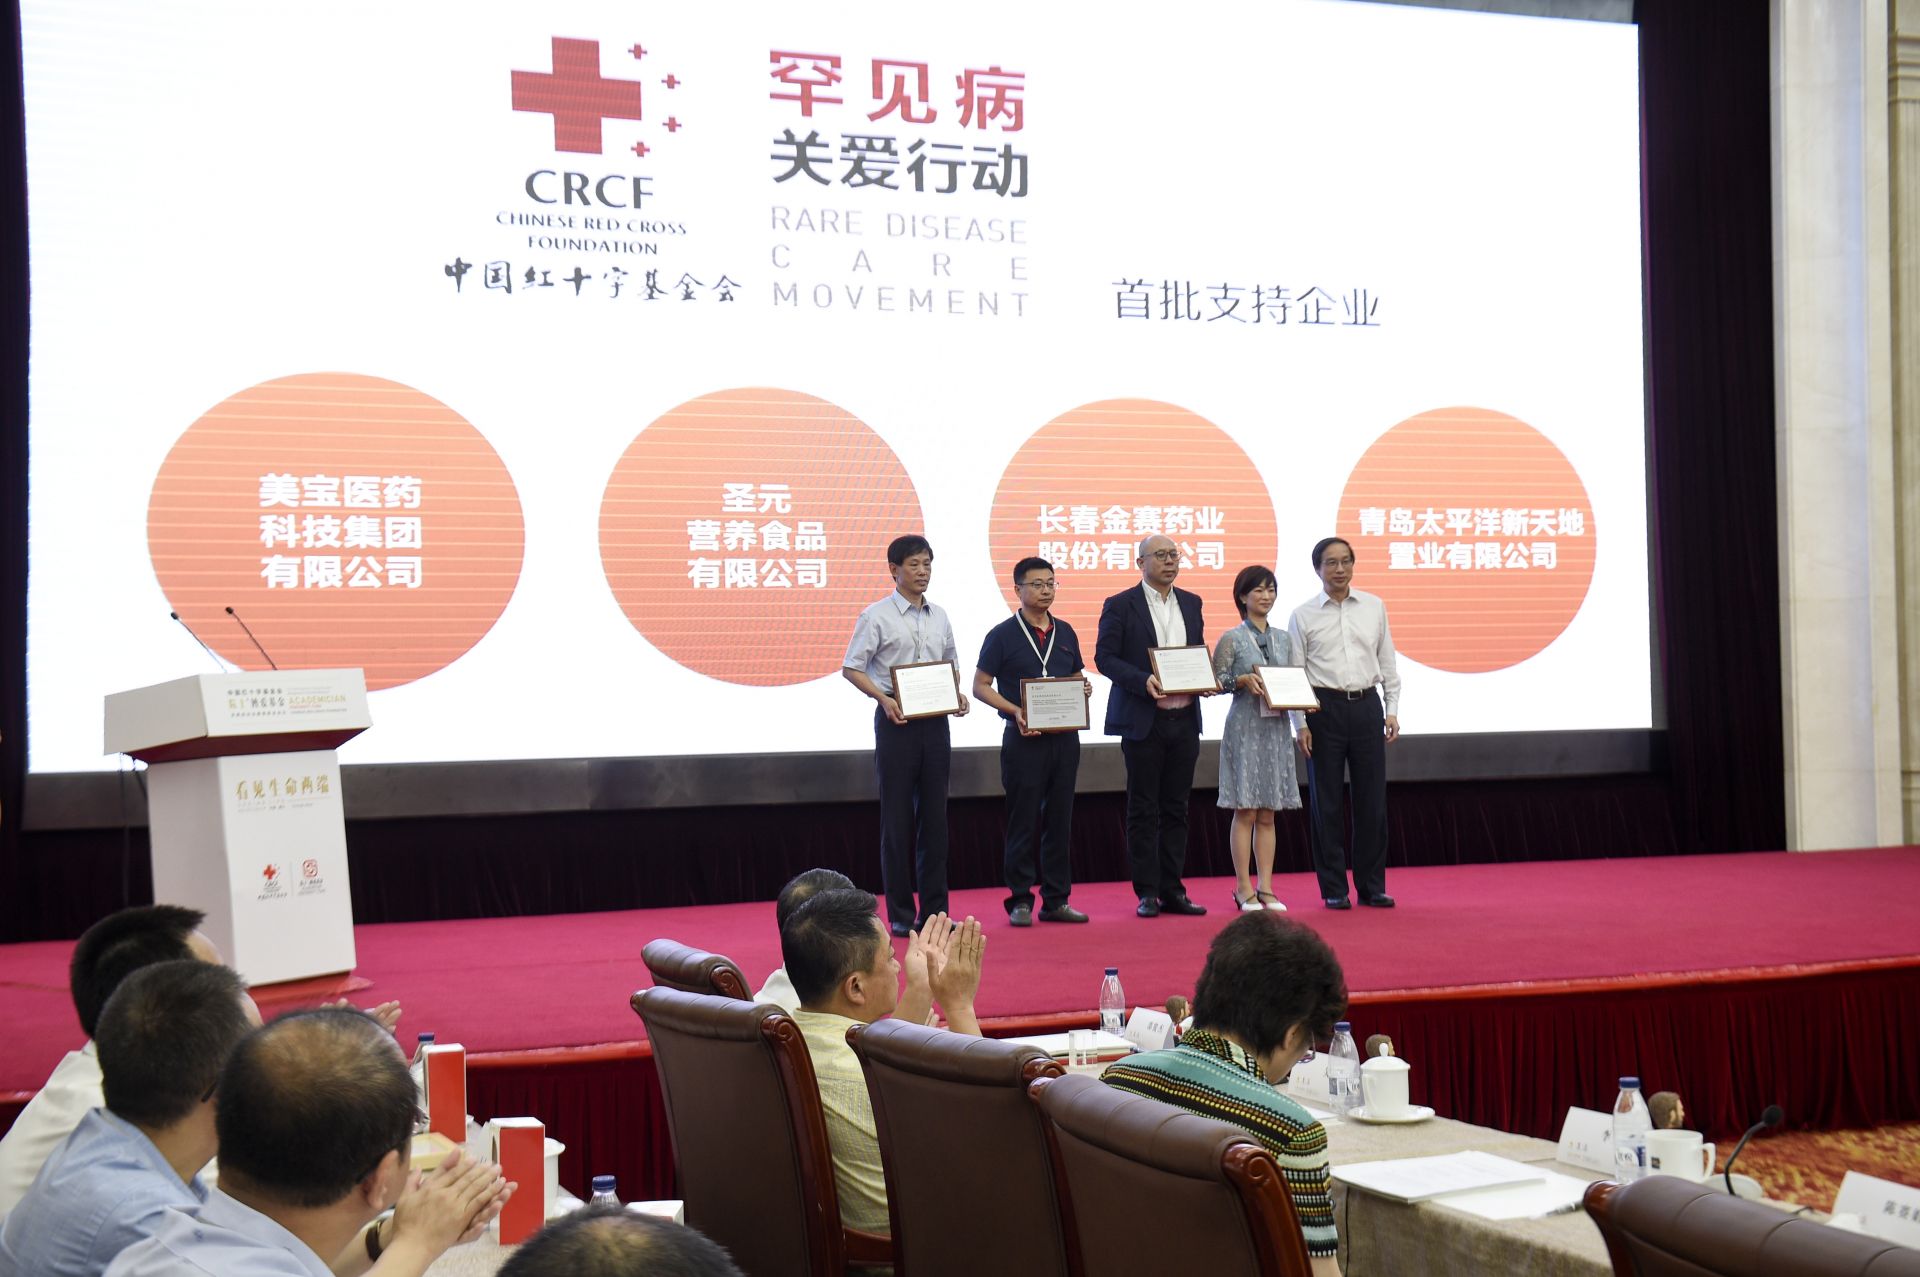 中国红十字基金会启动罕见病关爱行动